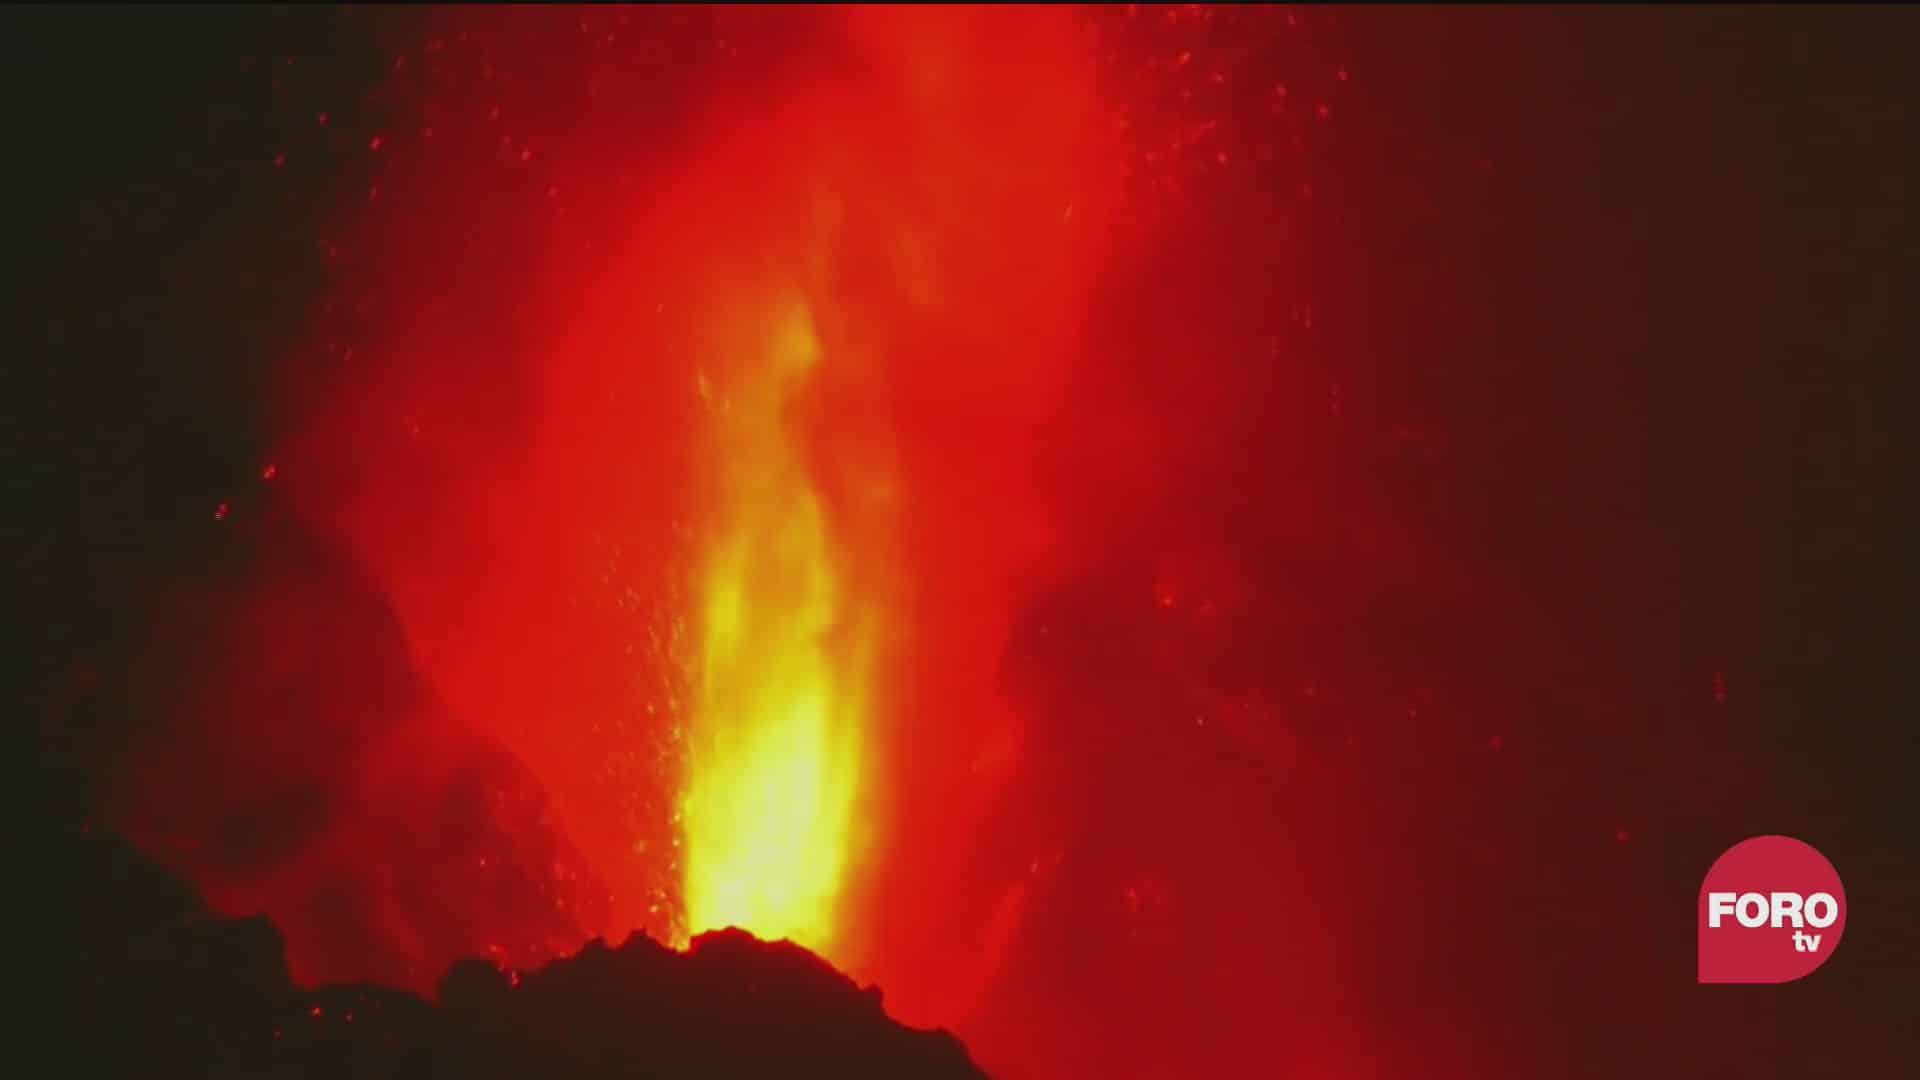 volcan cumbre vieja esta en maxima actividad